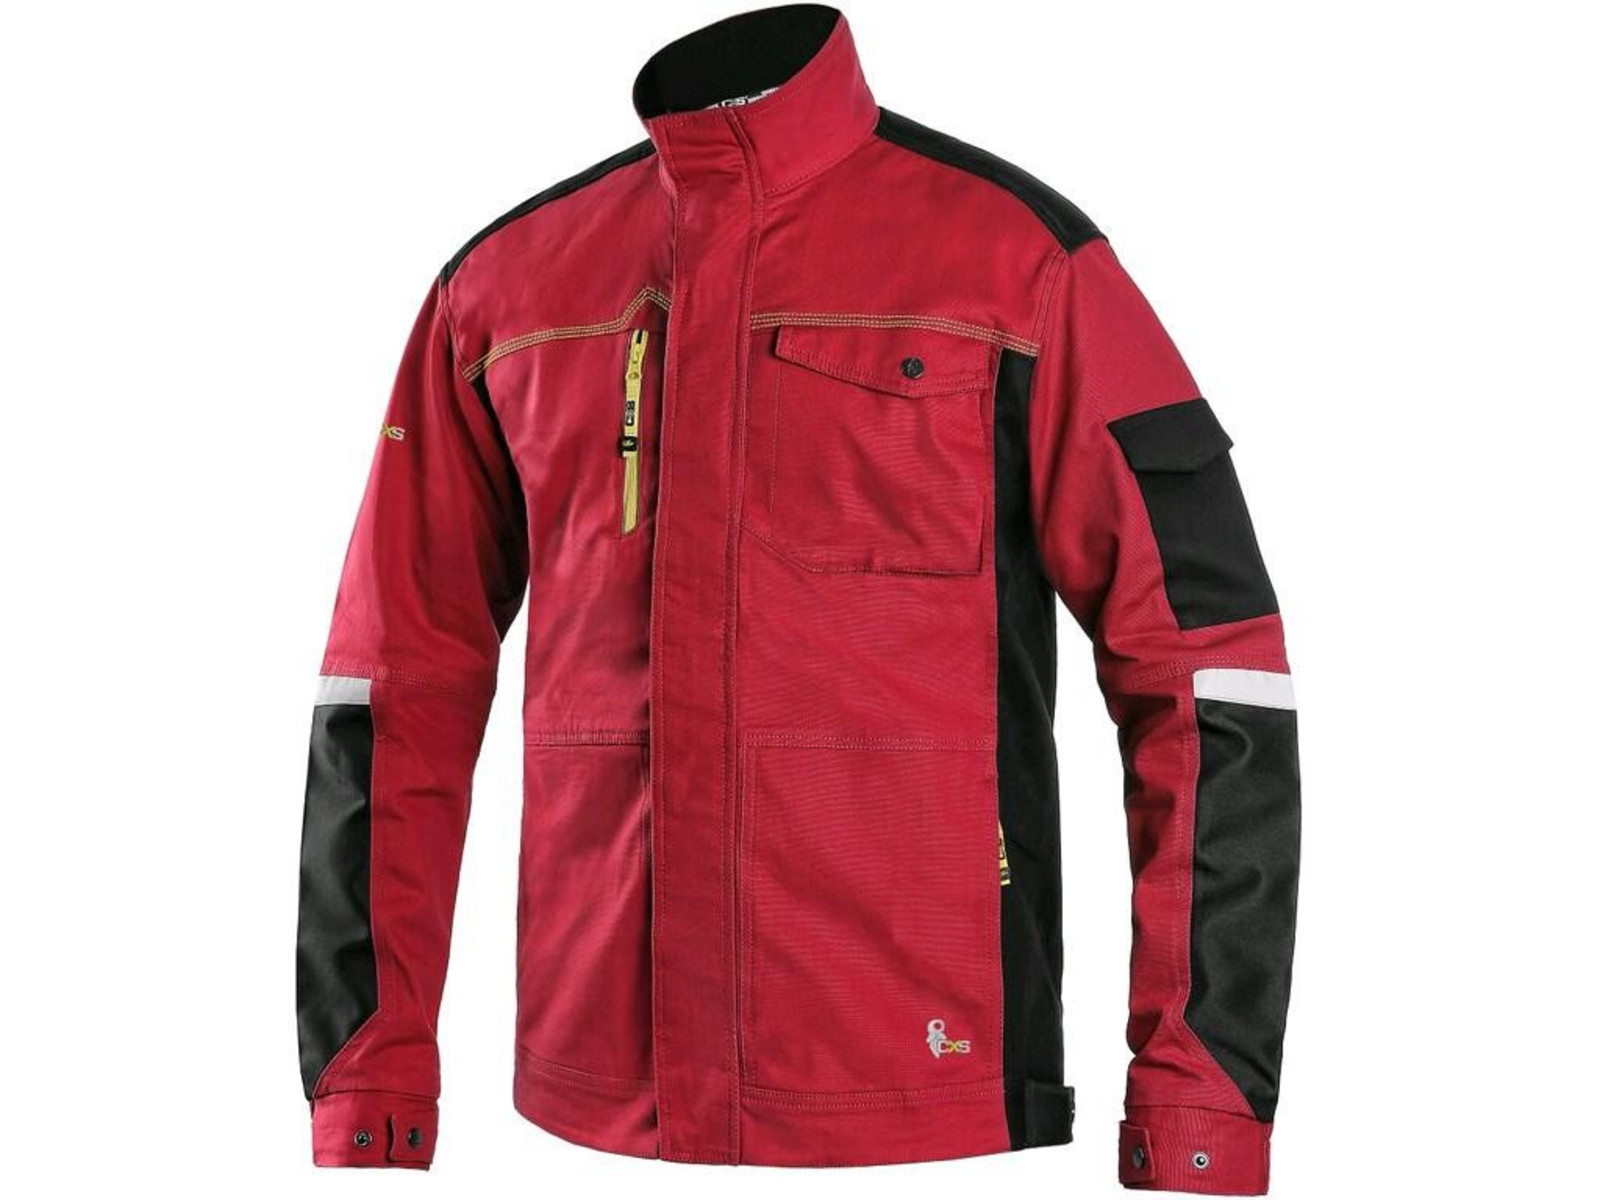 Strečová montérková bunda CXS Stretch - veľkosť: 52, farba: červená/čierna